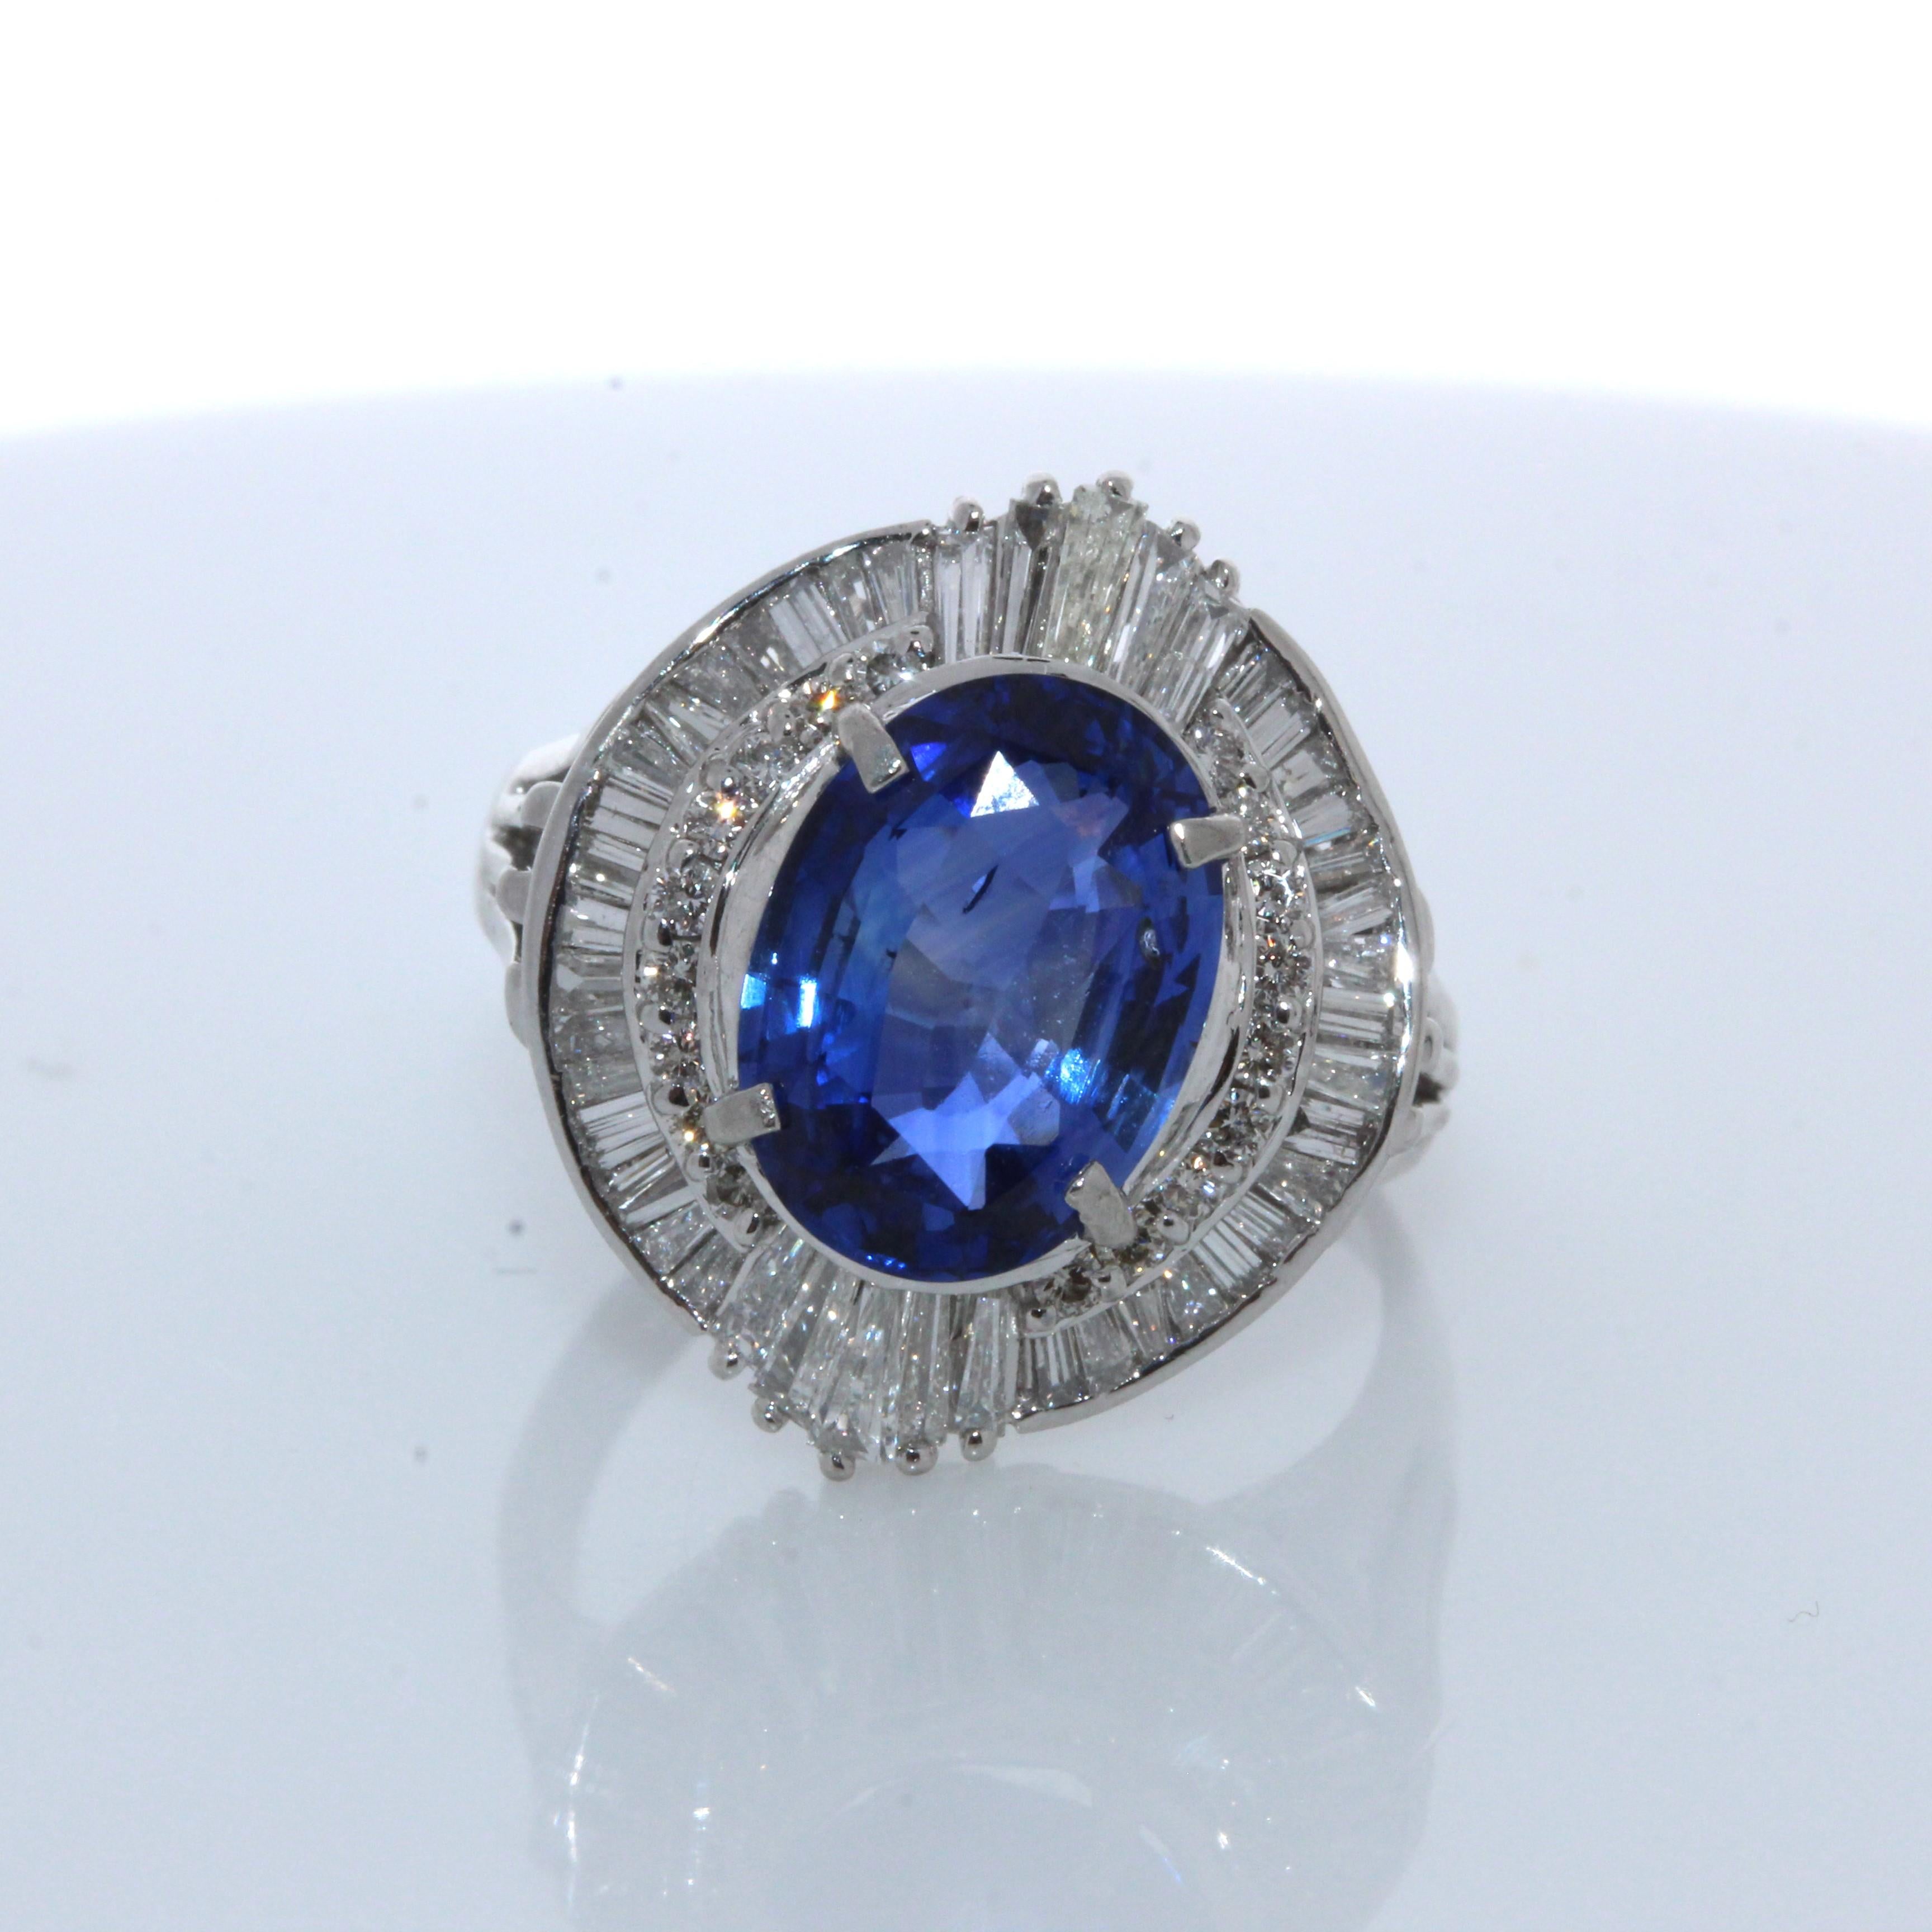 Dies ist ein blauer Saphir mit 3,63 Karat im Kissenschliff. Der Edelstein stammt aus Sri Lanka; seine Farbe ist königsblau und gleichmäßig über den gesamten Edelstein verteilt. Sein Glanz und seine Transparenz sind hervorragend. Funkelnde Diamanten